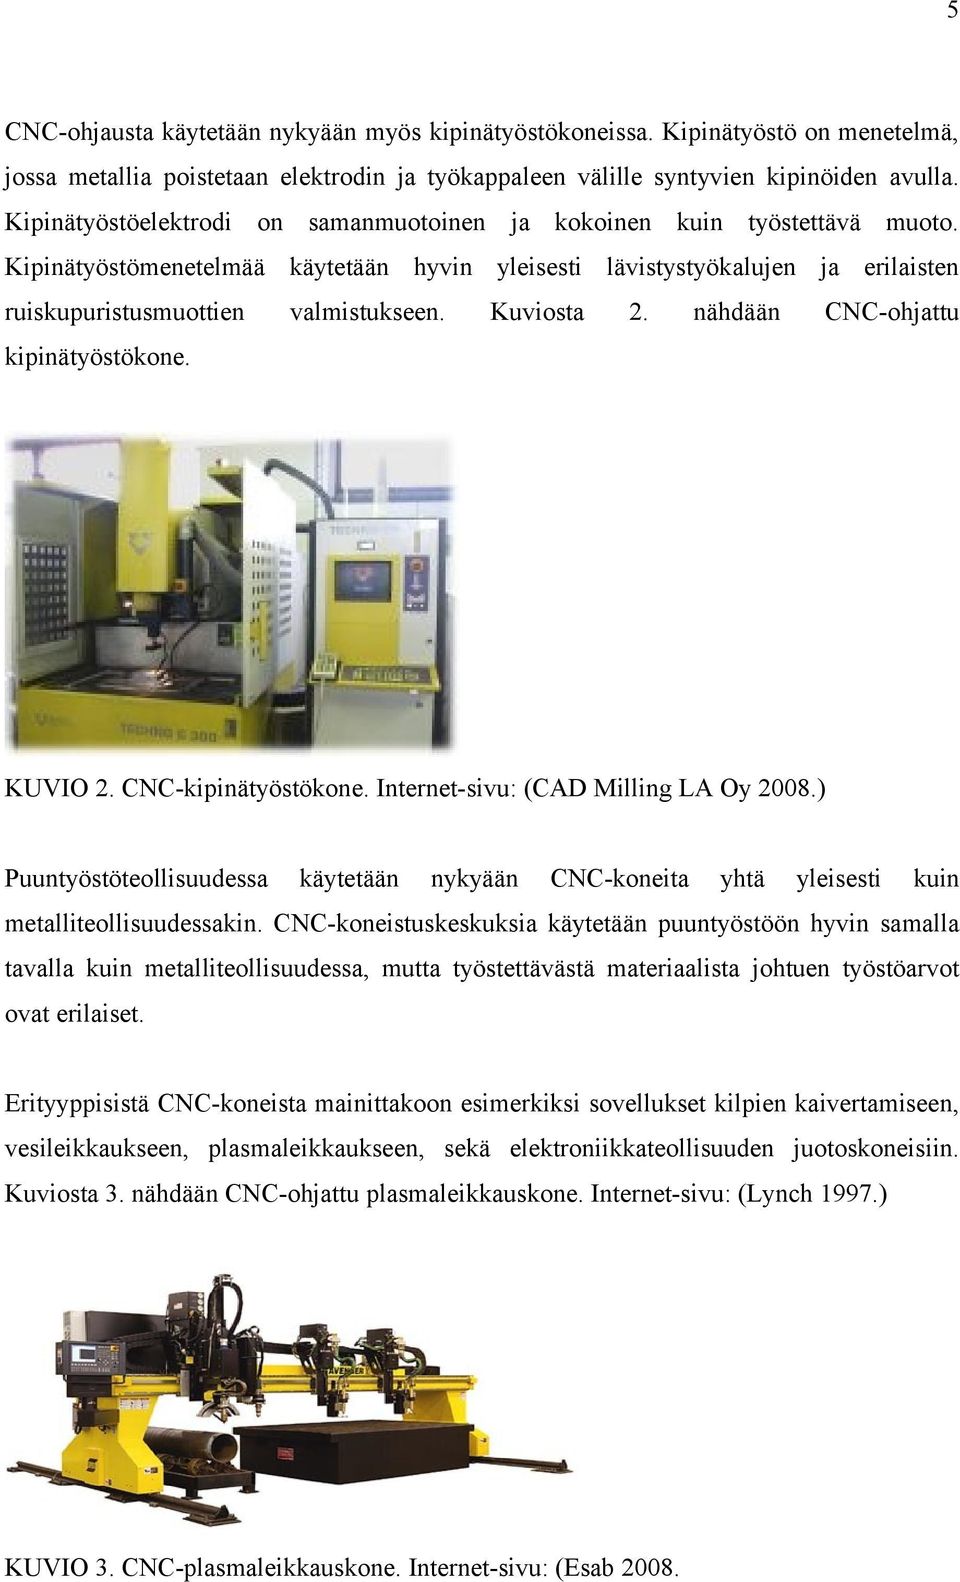 Kuviosta 2. nähdään CNC-ohjattu kipinätyöstökone. KUVIO 2. CNC-kipinätyöstökone. Internet-sivu: (CAD Milling LA Oy 2008.